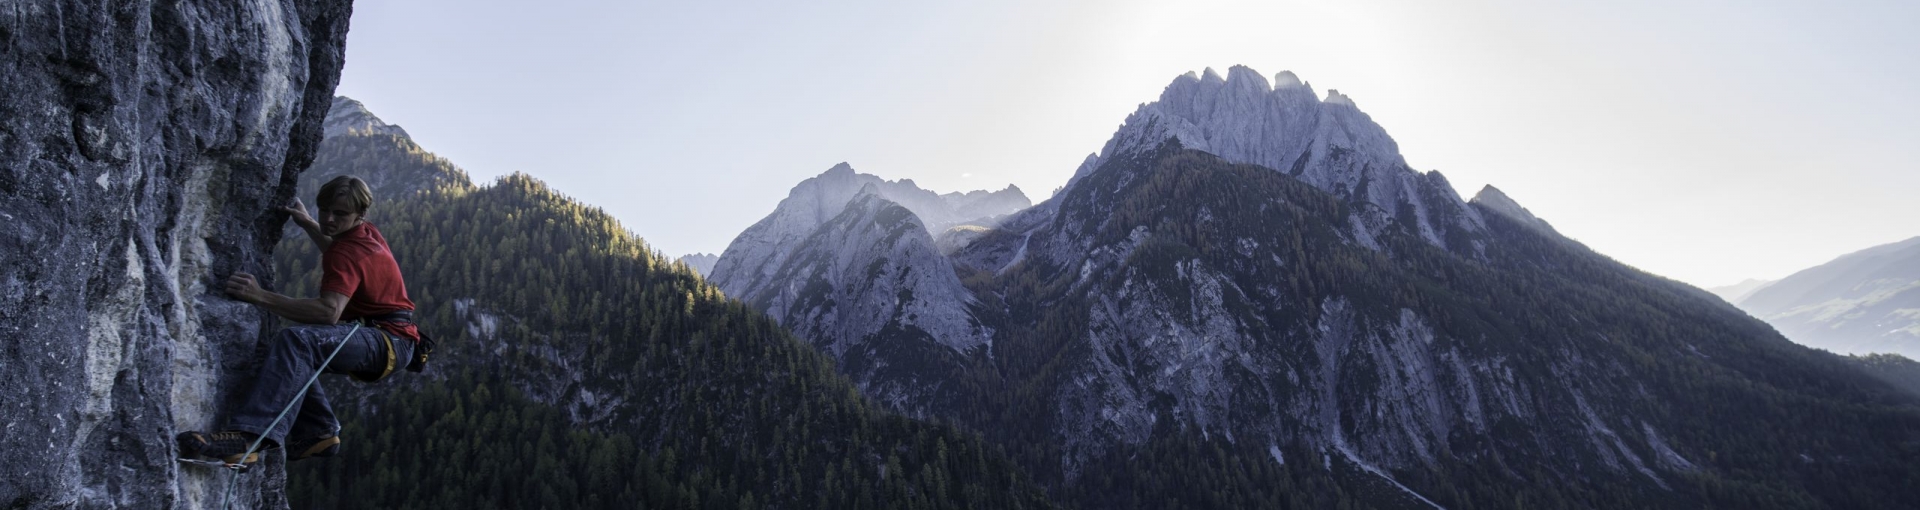 Osttirol Dolomitenhütte ©Tirol Werbung - Mair Johannes